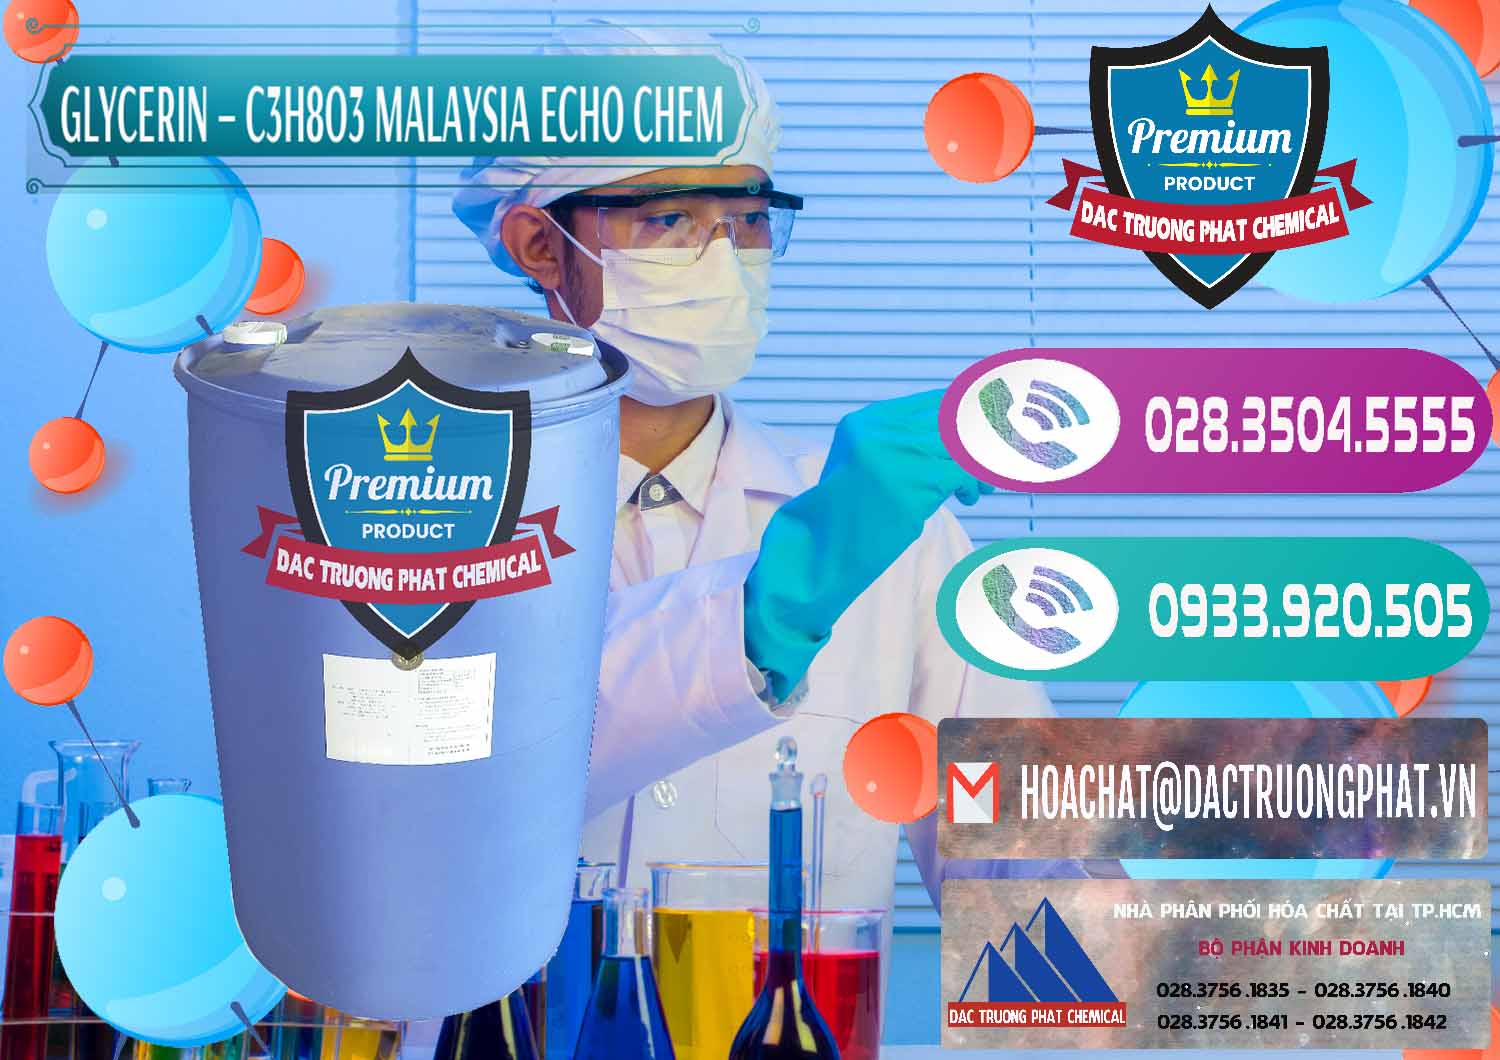 Đơn vị chuyên phân phối ( bán ) Glycerin – C3H8O3 99.7% Echo Chem Malaysia - 0273 - Cty phân phối và cung cấp hóa chất tại TP.HCM - hoachatxulynuoc.com